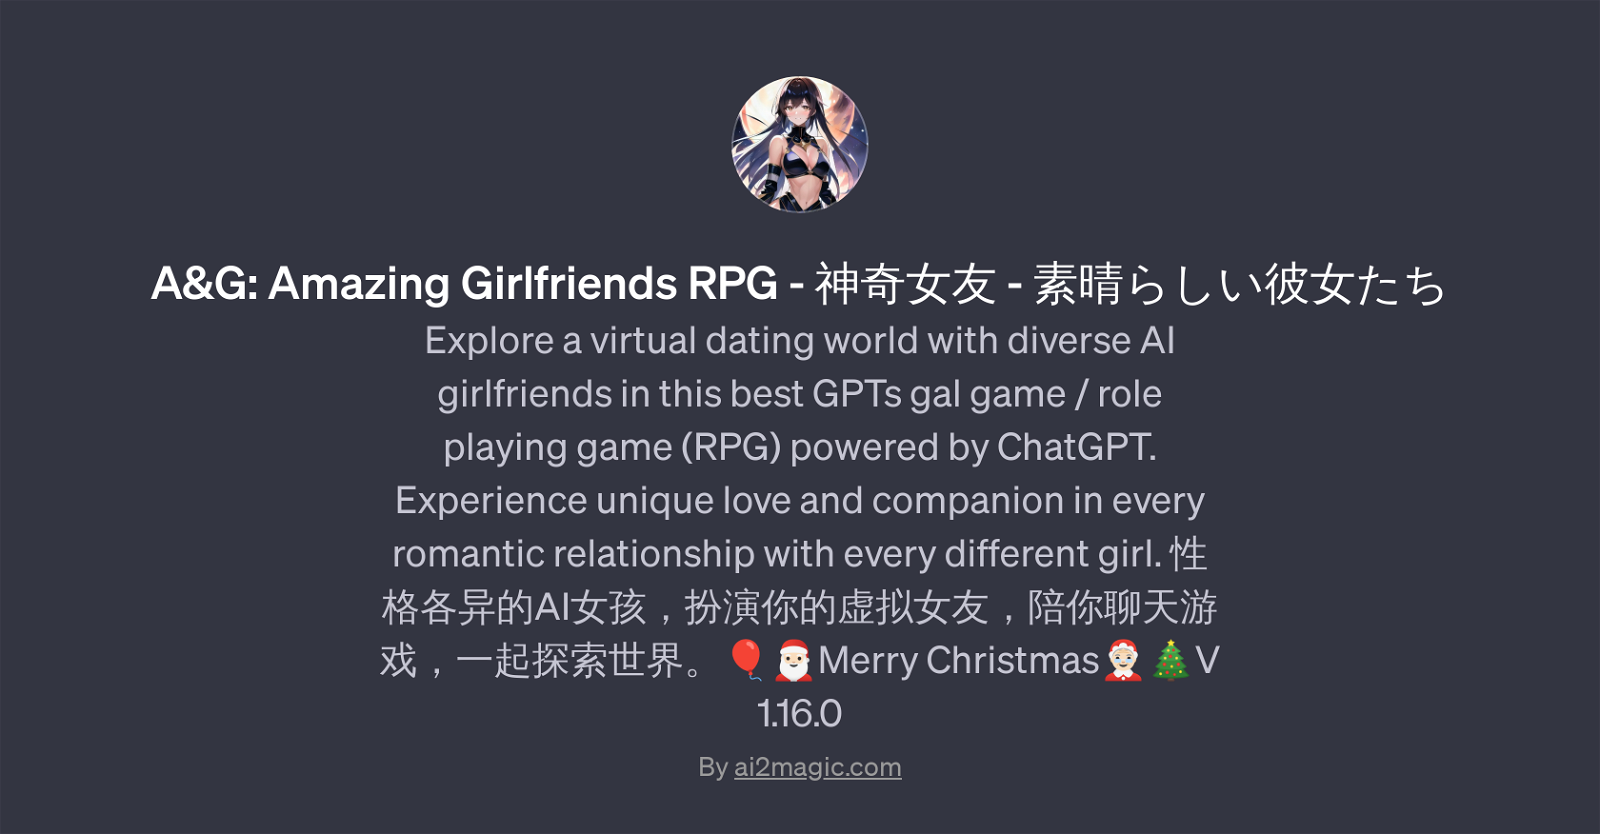 A&G: Amazing Girlfriends RPG website